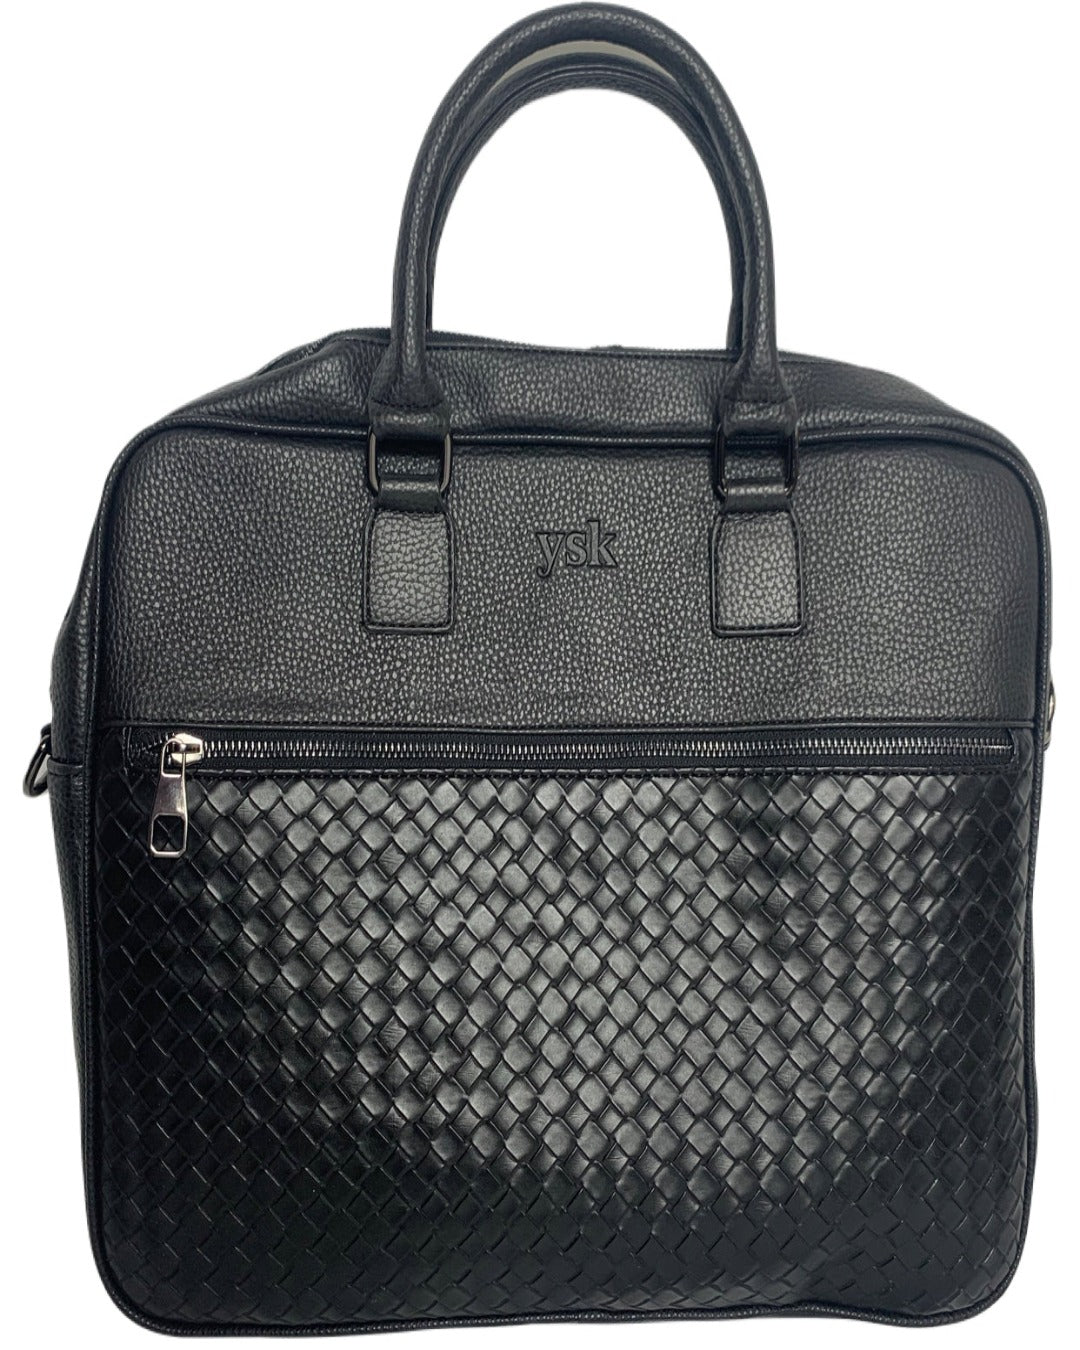 Briefcase - Gentlemen Top Handle Bag